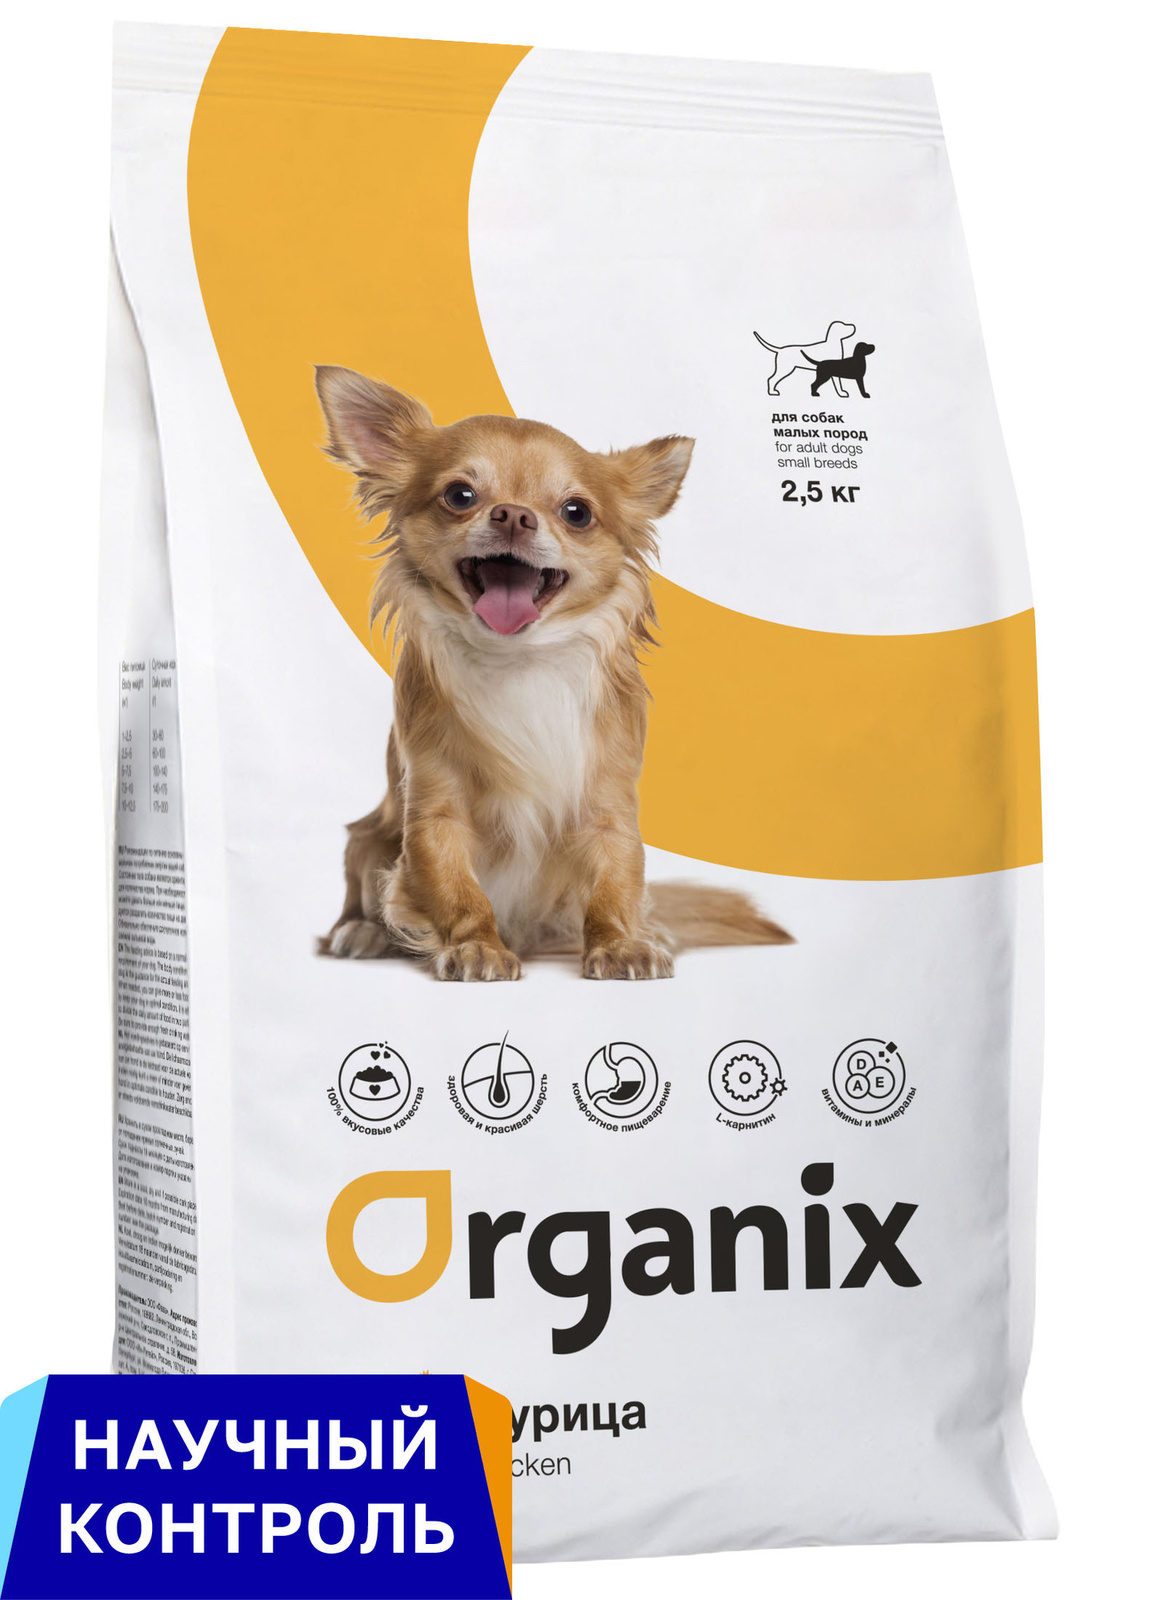 Organix Organix сухой корм для собак малых пород, с курицей (12 кг)